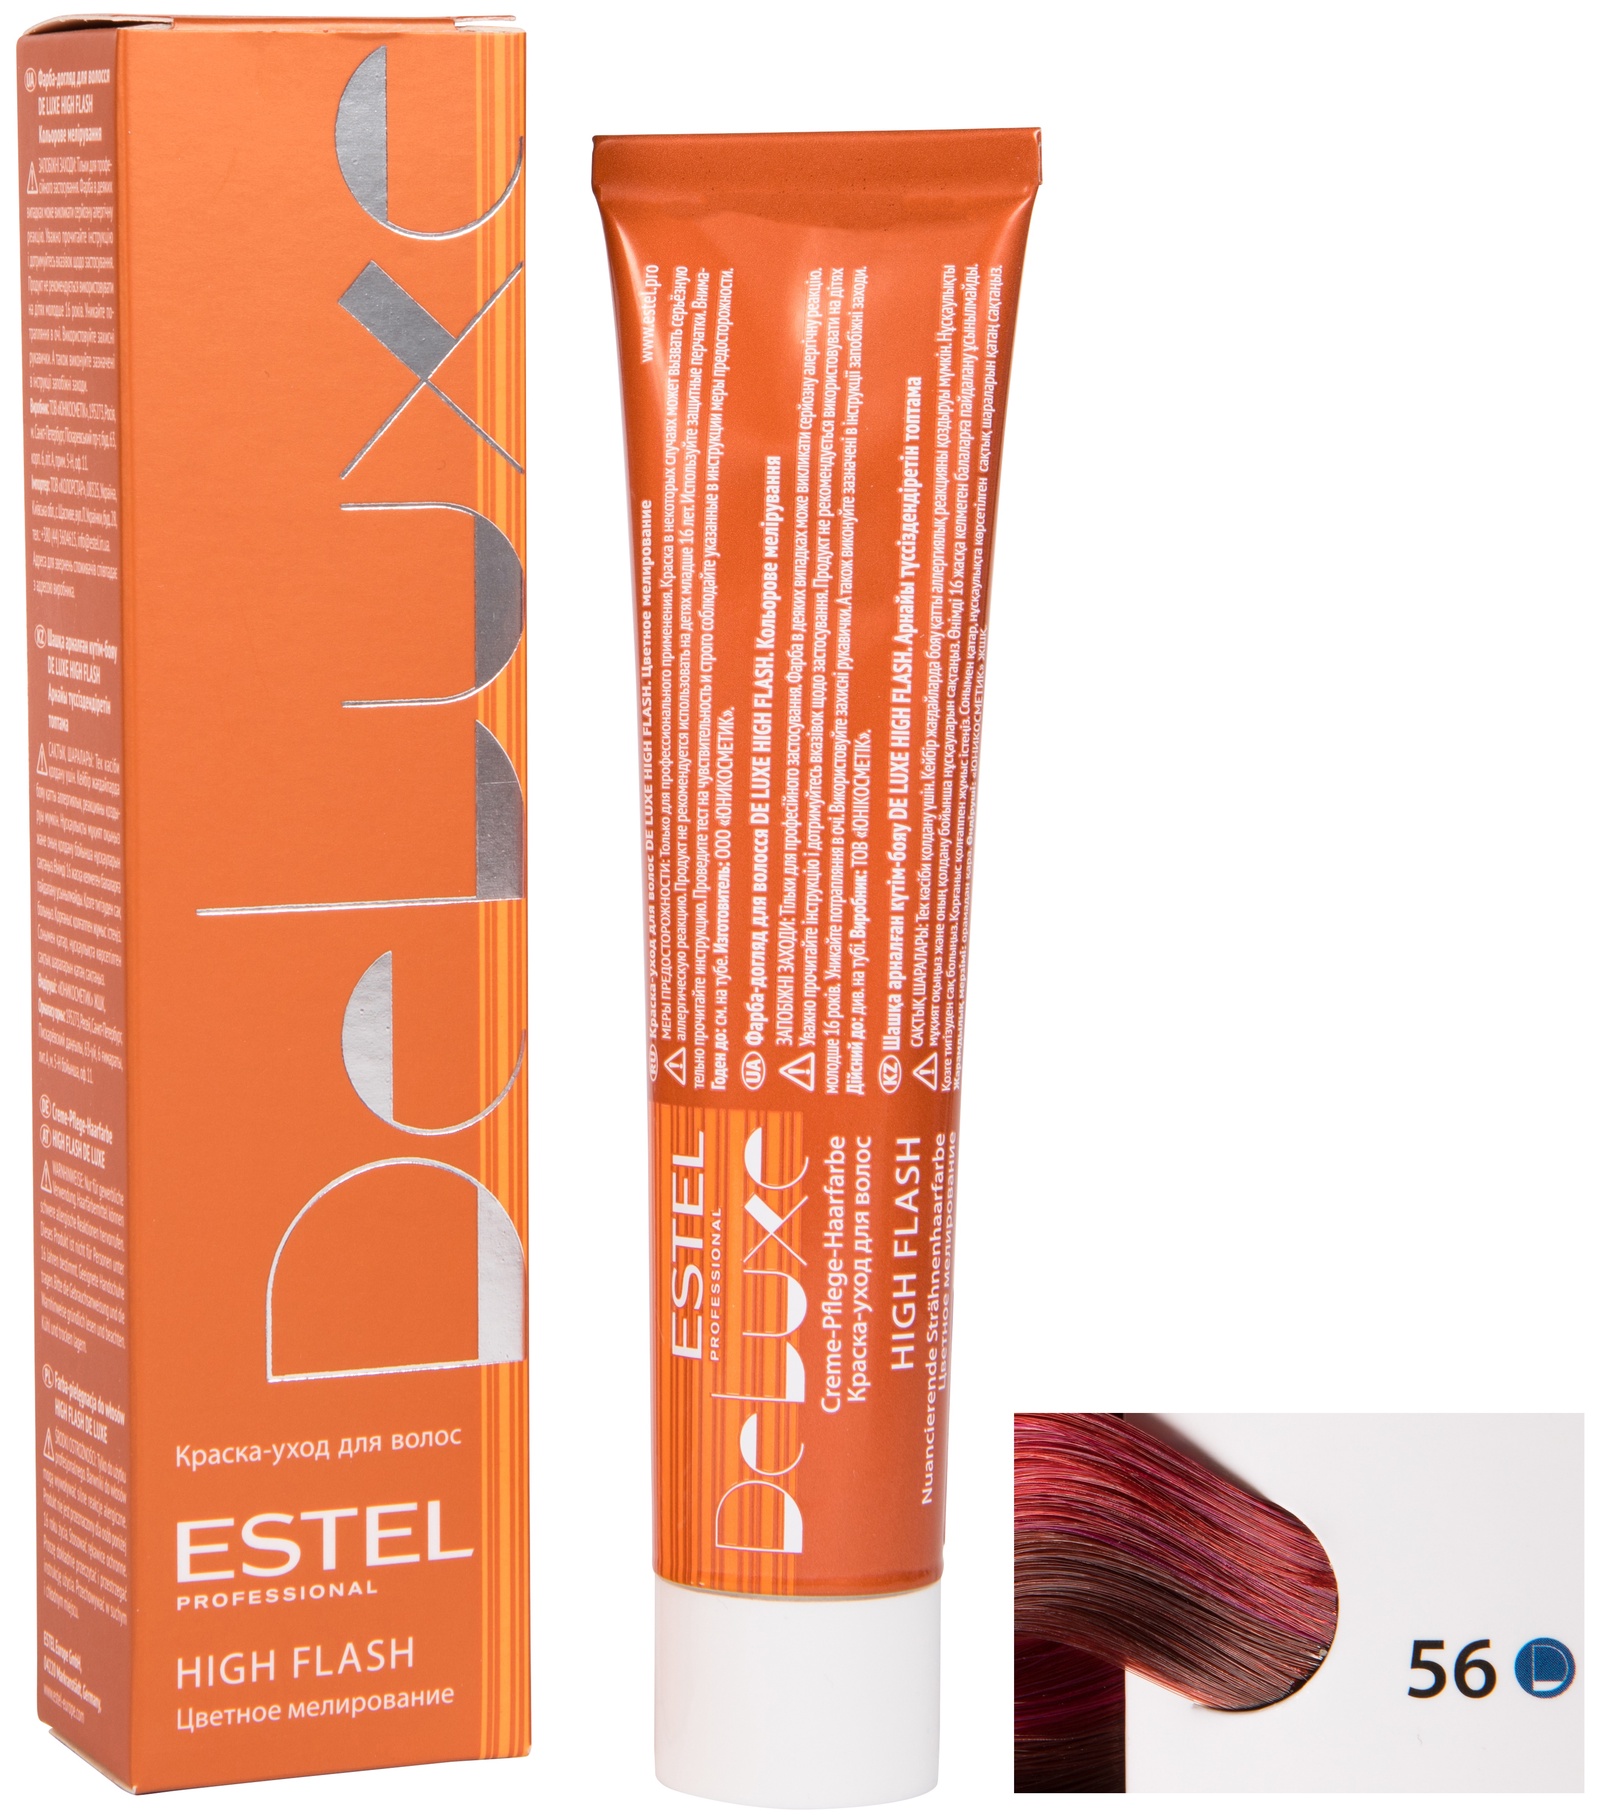 Краска для волос ESTEL PROFESSIONAL 56 DE LUXE HIGH FLASH краска-уход для мелирования волос, красно-фиолетовый 60 мл